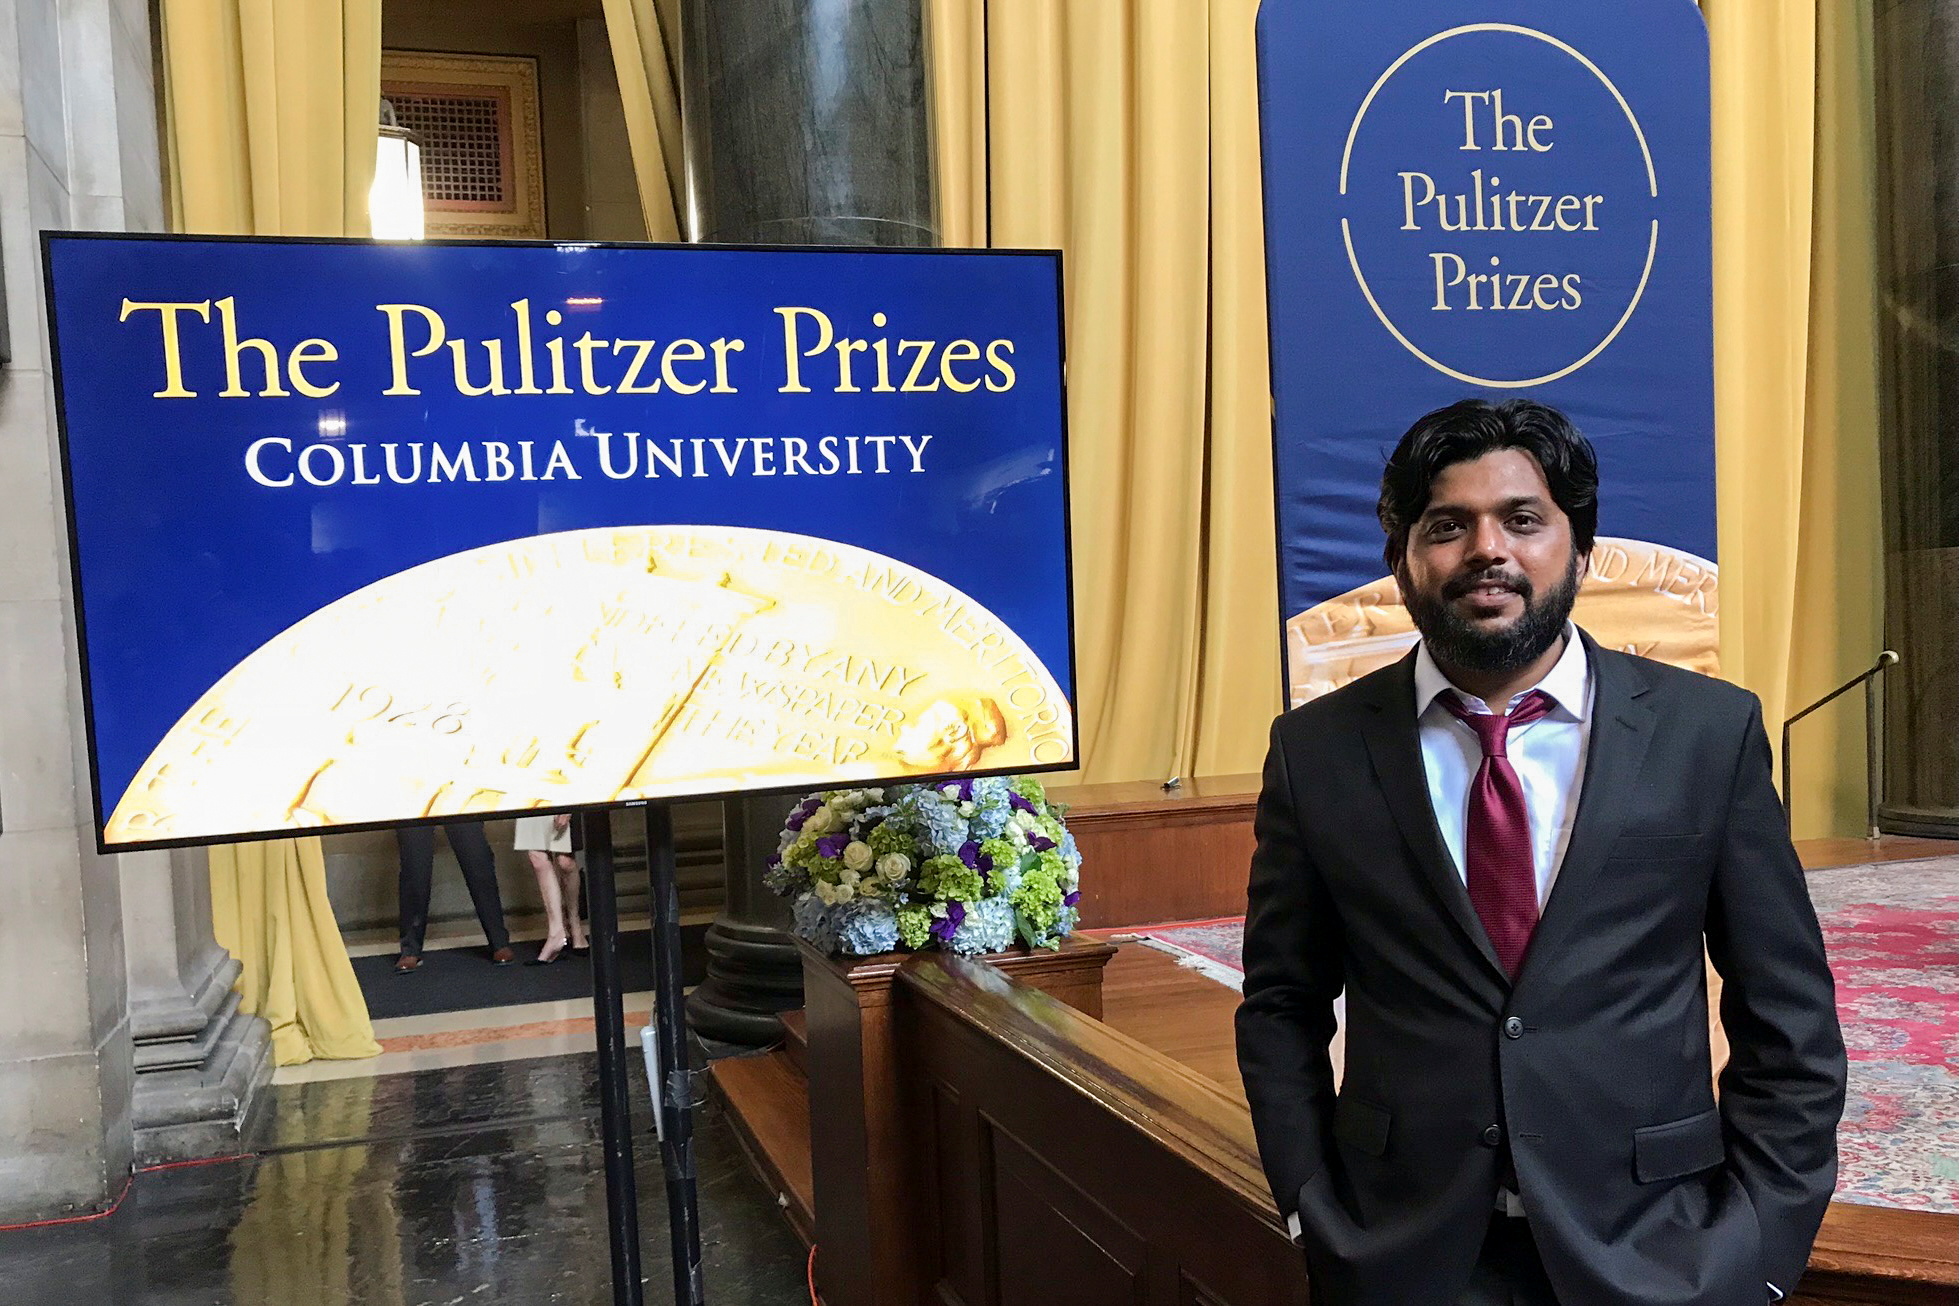 Danish Siddiqui, fotógrafo de Reuters con sede en la India, posa para una foto en la Biblioteca Low Memorial de la Universidad de Columbia durante la ceremonia de entrega del Premio Pulitzer, en Nueva York, Estados Unidos, el 30 de mayo de 2018 (Reuters)